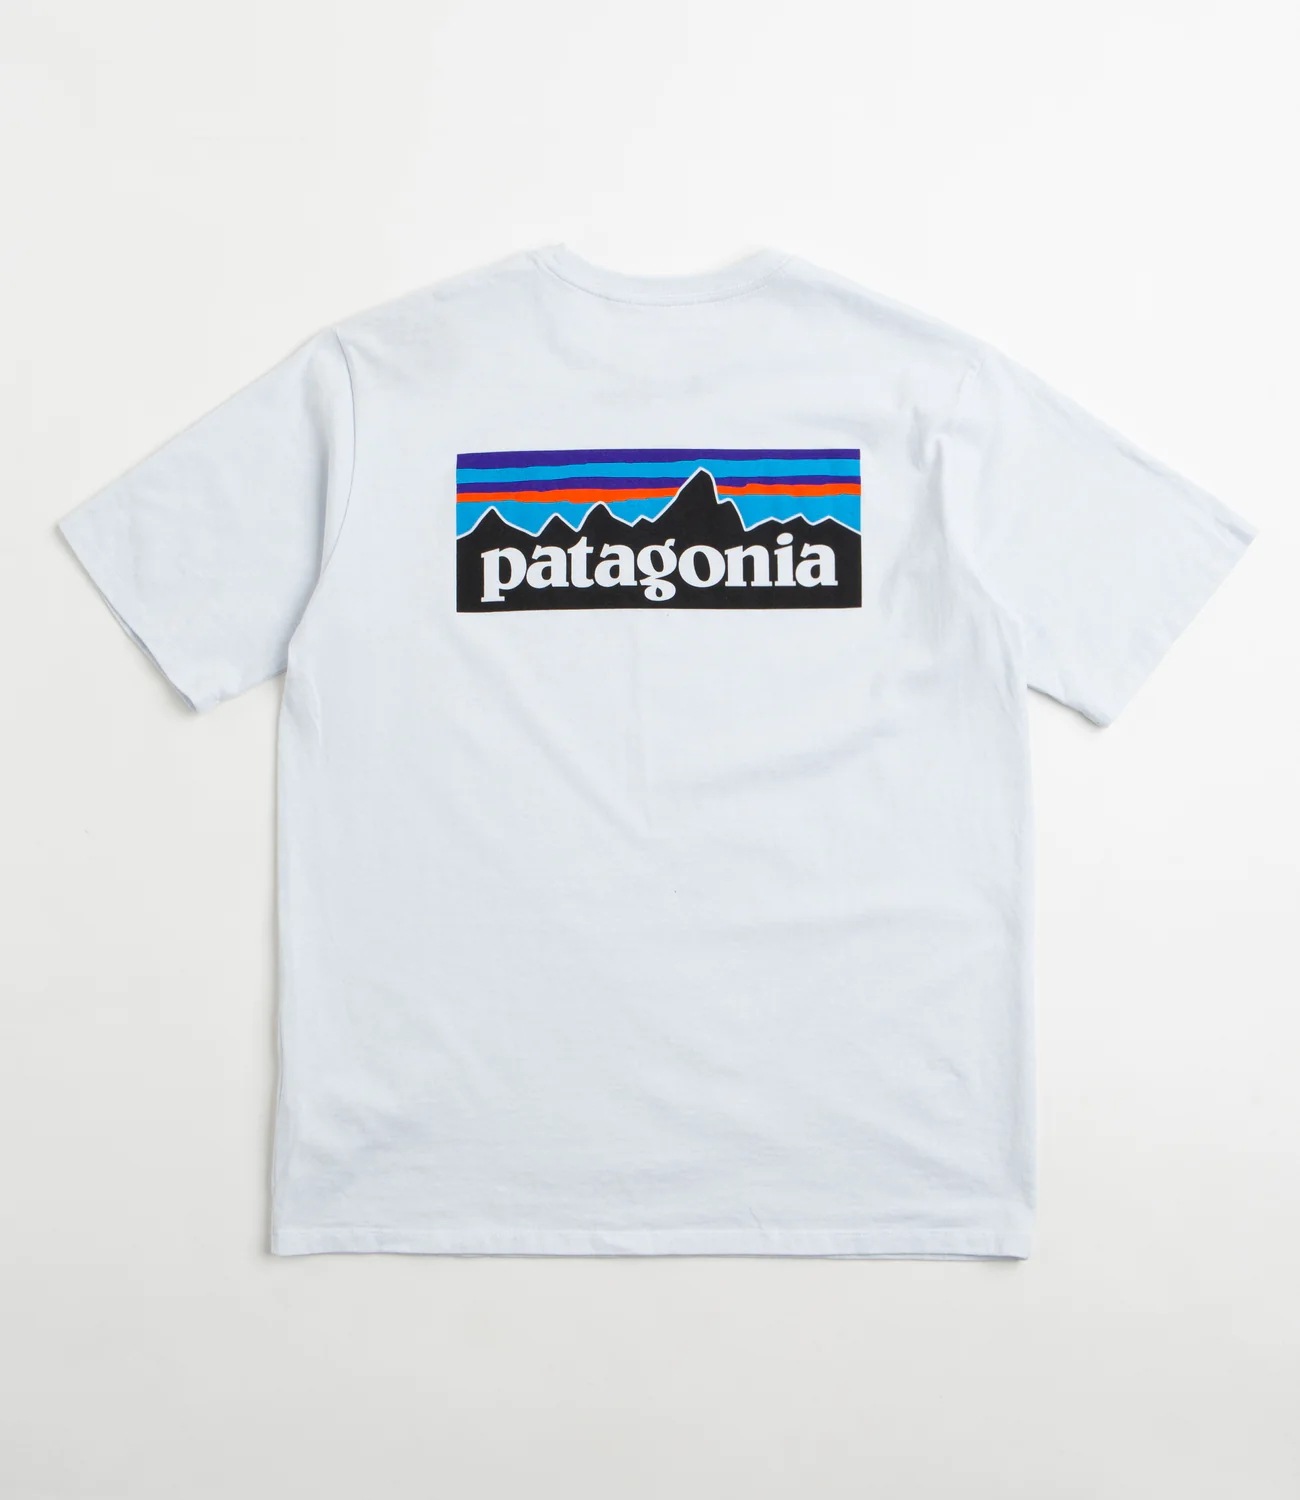 パタゴニアP-6 Responsibili-Tee（ロゴレスポンシブルTシャツ) 正規品 半板Tシャツ 2type